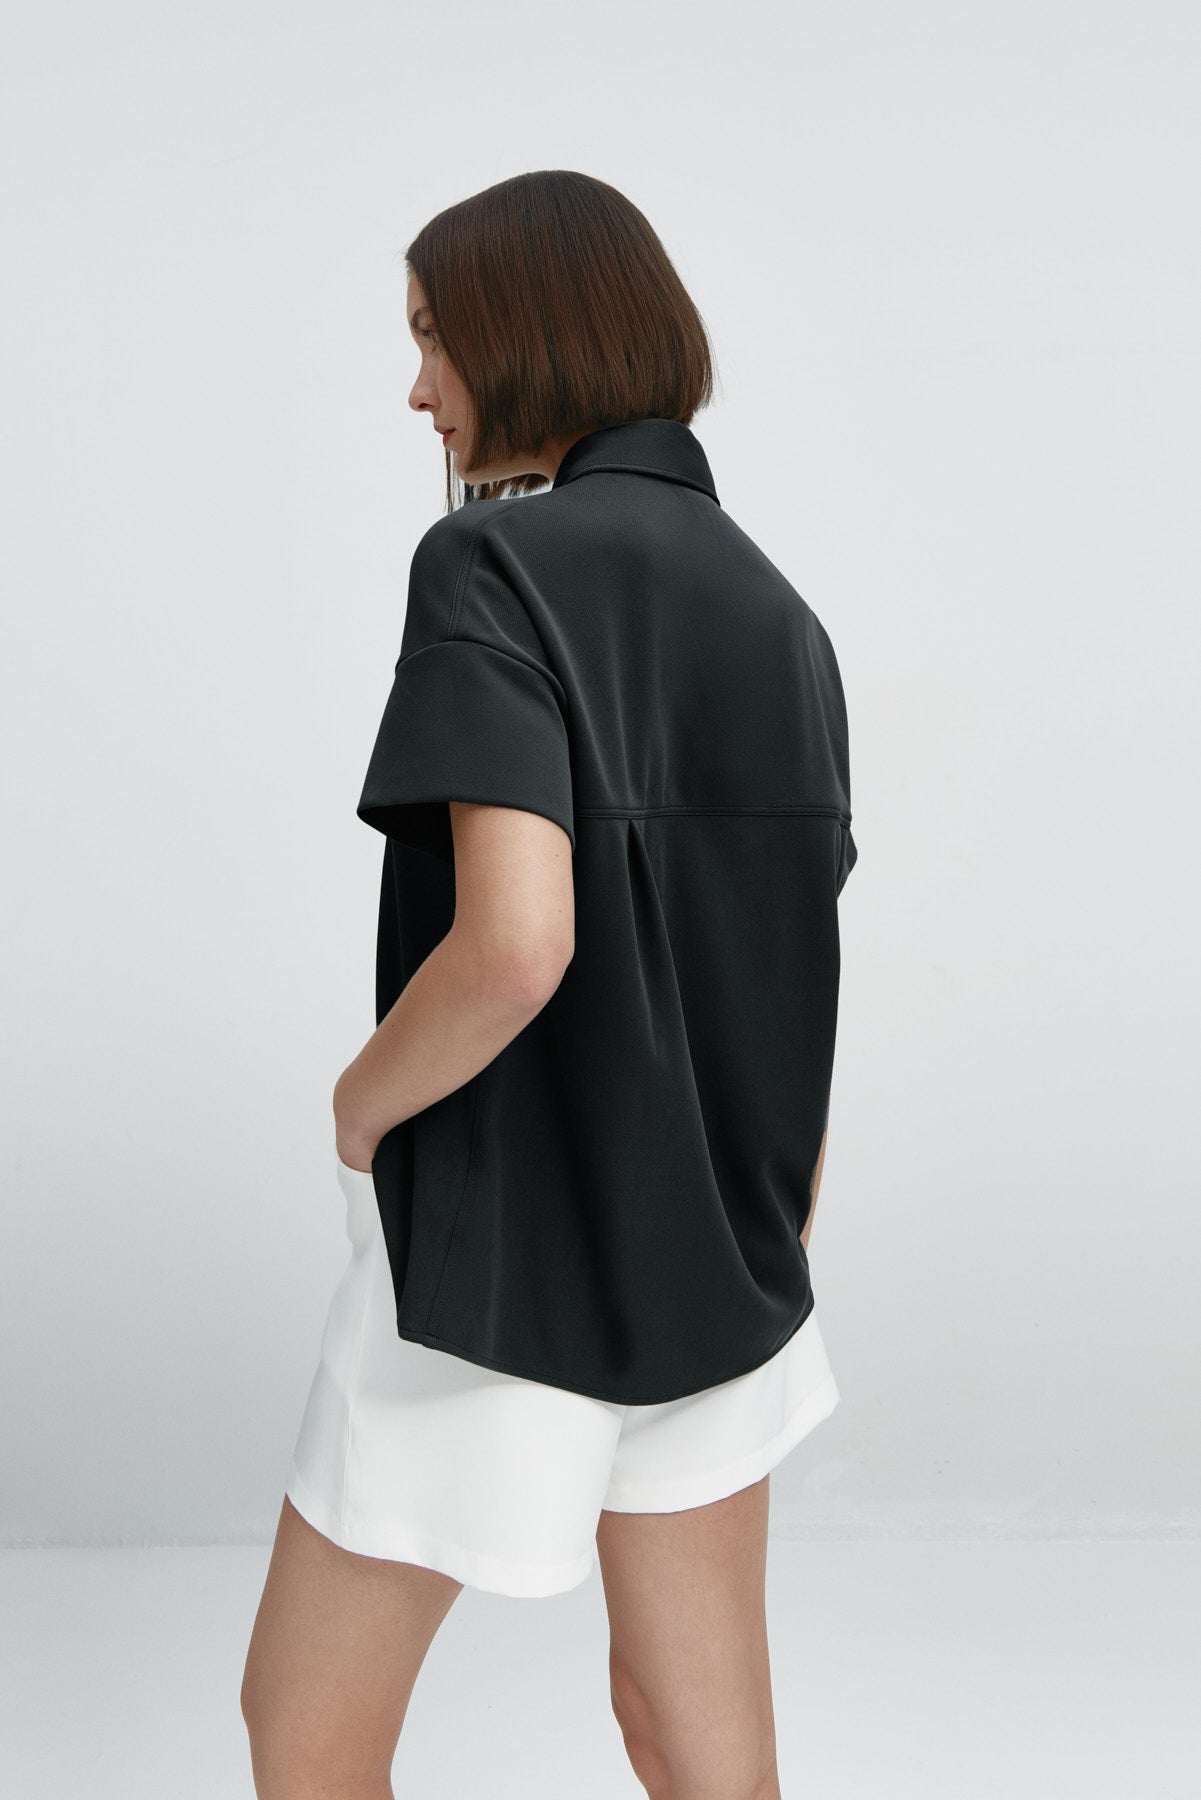 Camisa manga corta mujer negra de Sepiia, estilo y versatilidad en una prenda cómoda y resistente. Foto espalda